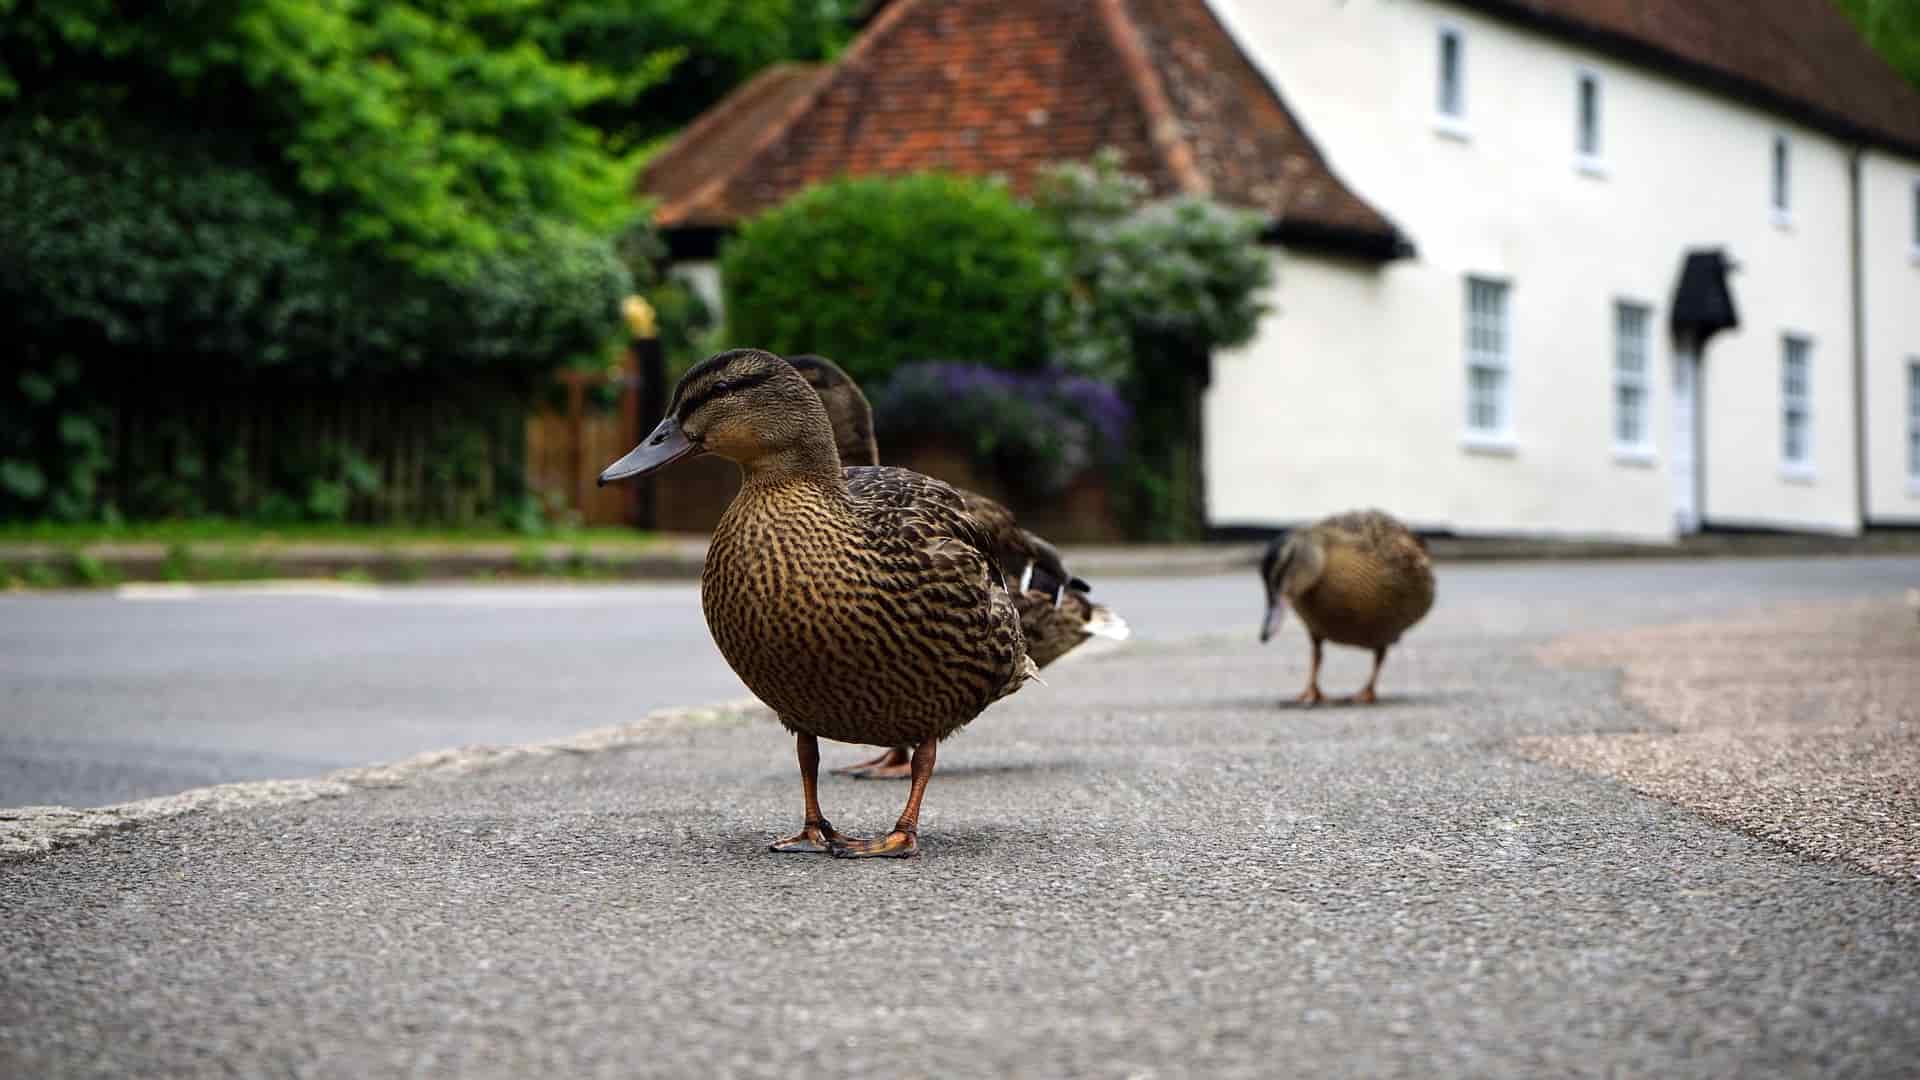 Ducks in Road